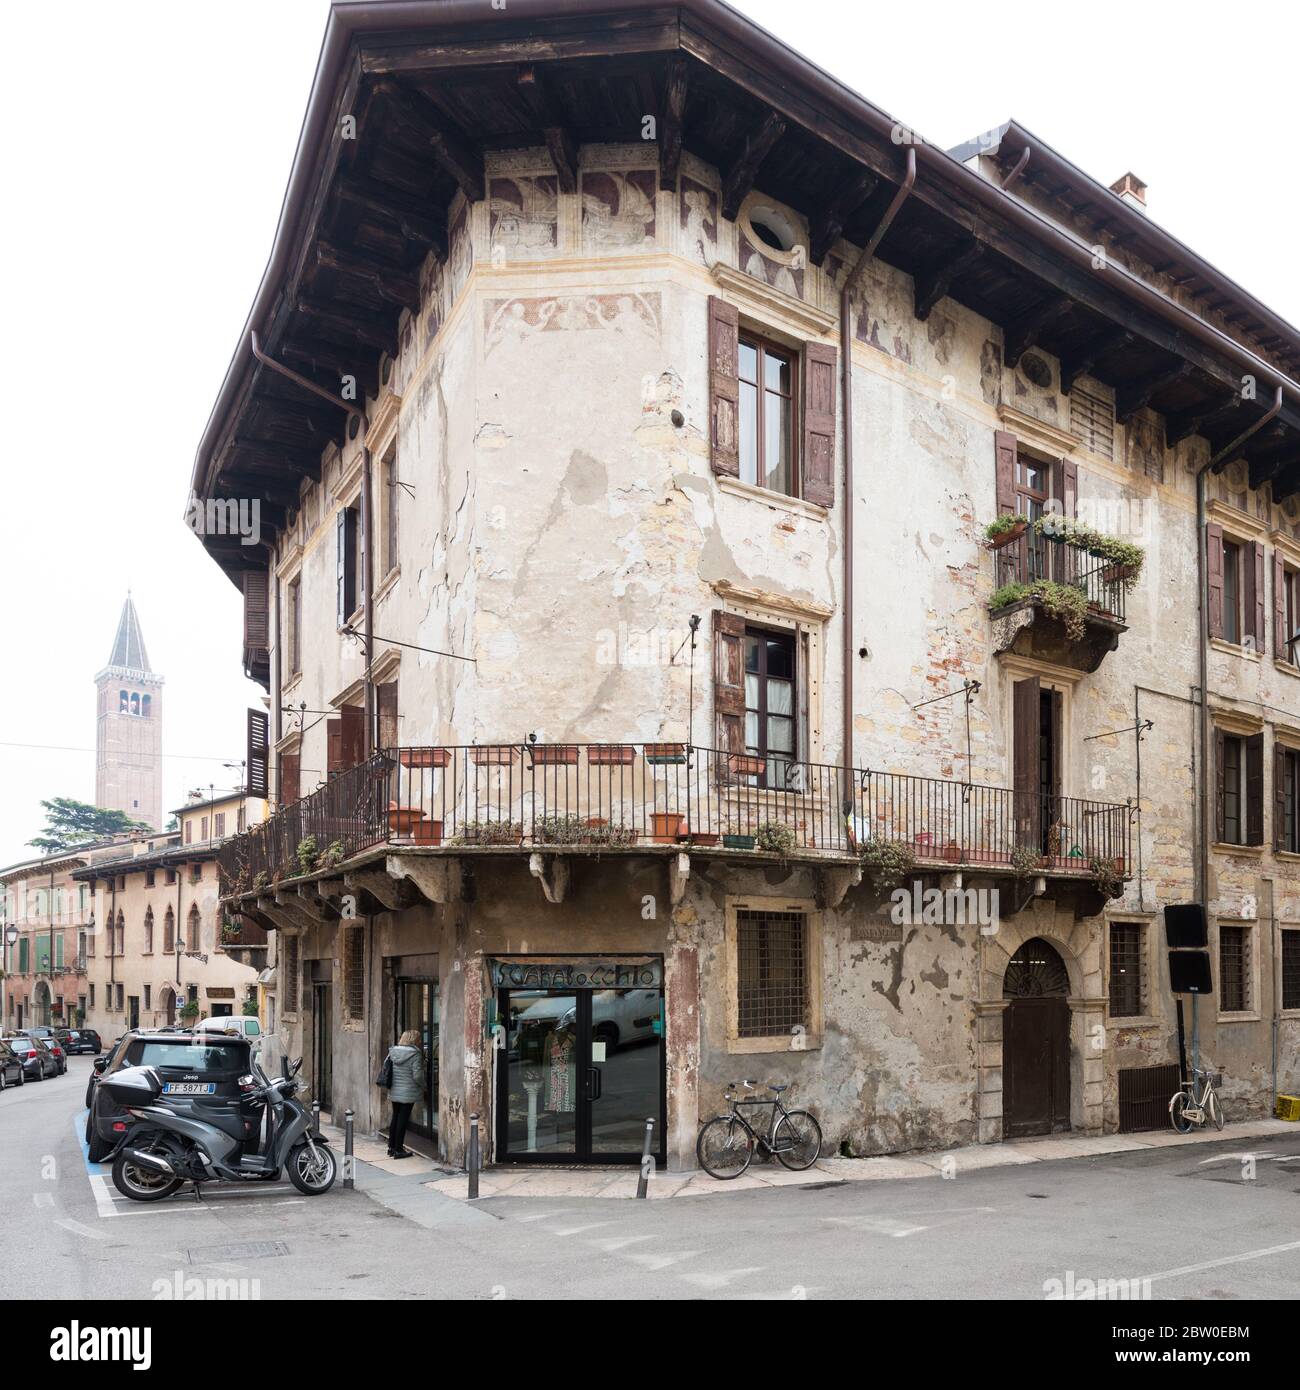 VERONA, ITALIA - 14 MARZO 2018: Immagine verticale di un incredibile edificio architettonico situato in Via Ponte pietra, una visita turistica di Verona Foto Stock